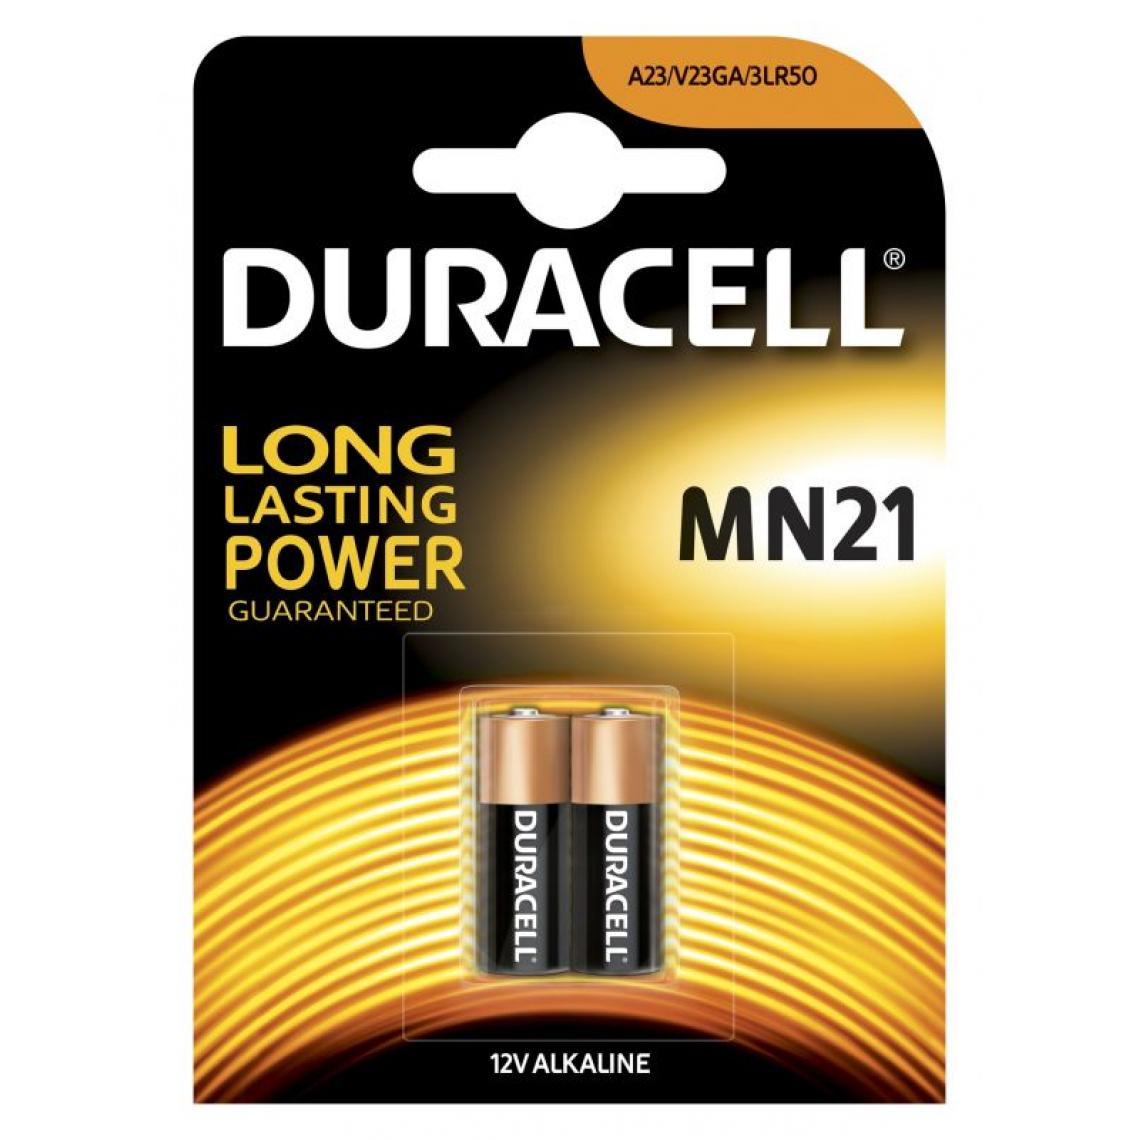 Inconnu - Duracell MN21 Batterie à usage unique Alcaline - Piles standard